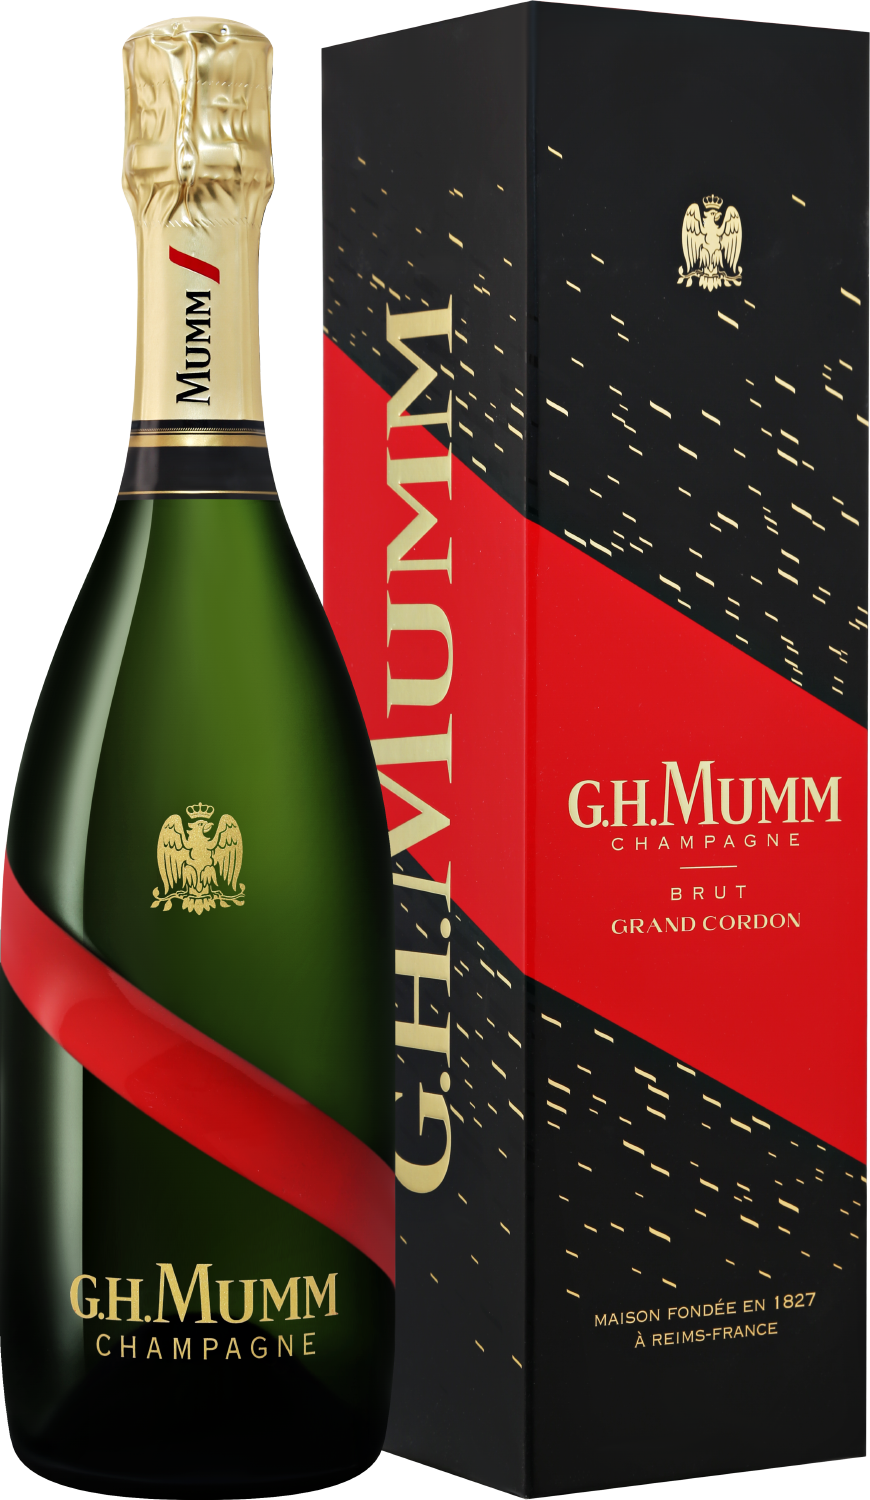 G.H. Mumm Grand Cordon Champagne AOC Brut (gift box) lallier grand rose brut grand cru champagne aoc gift box